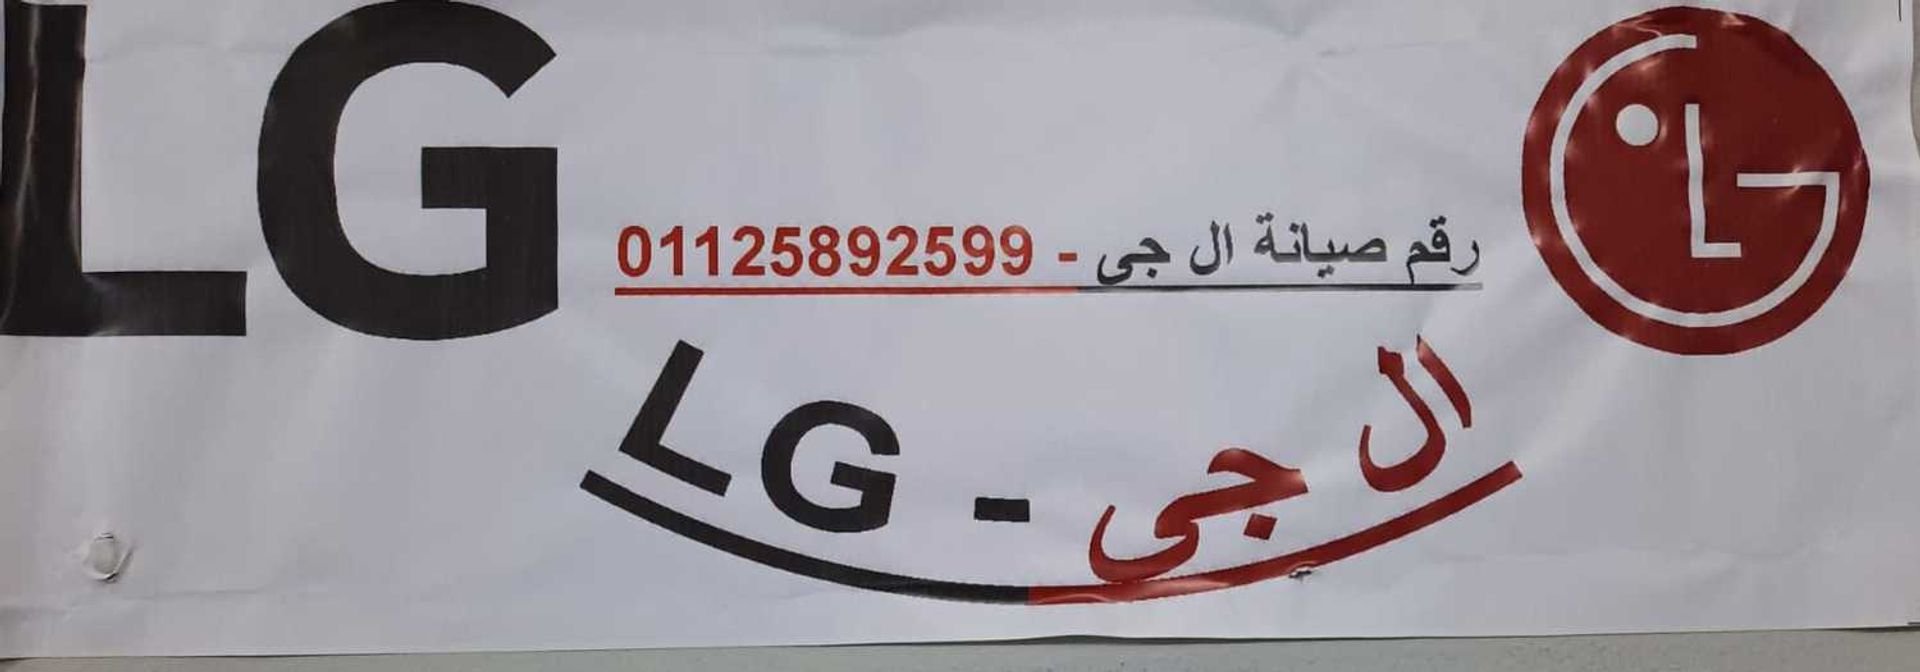 توكيل اصلاح غسالات LG التجمع الاول 01112124913 